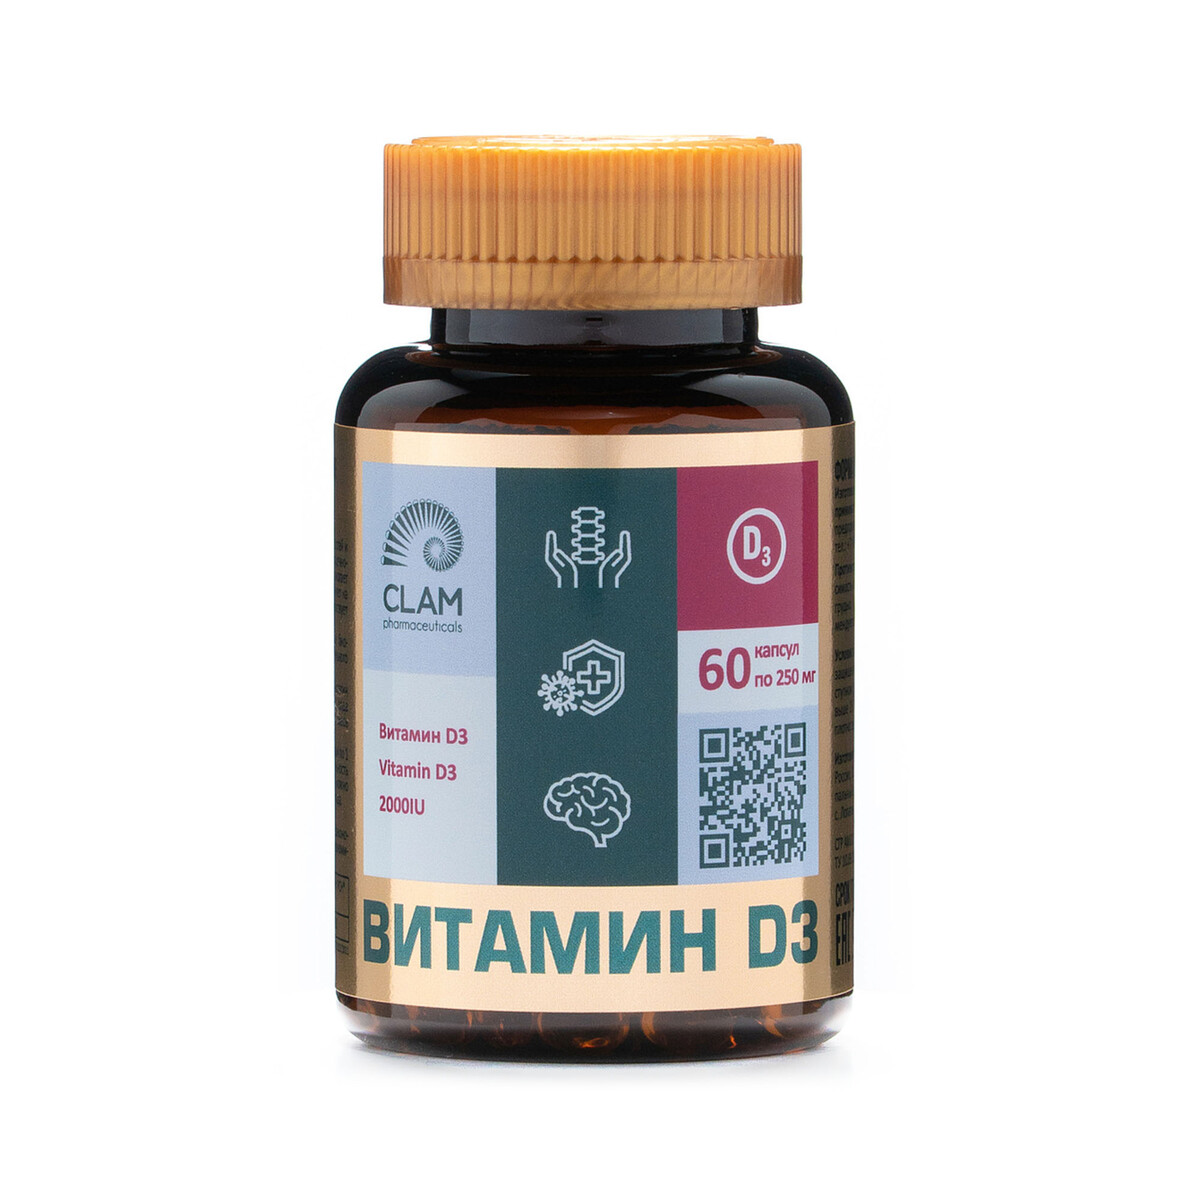 Витамин d3 2000ме - anti age, источник витаминов и минералов - для имунной системы, костей и суставов - 60 капсул кофеварка капельная kitfort кт 752 хорошее состояние